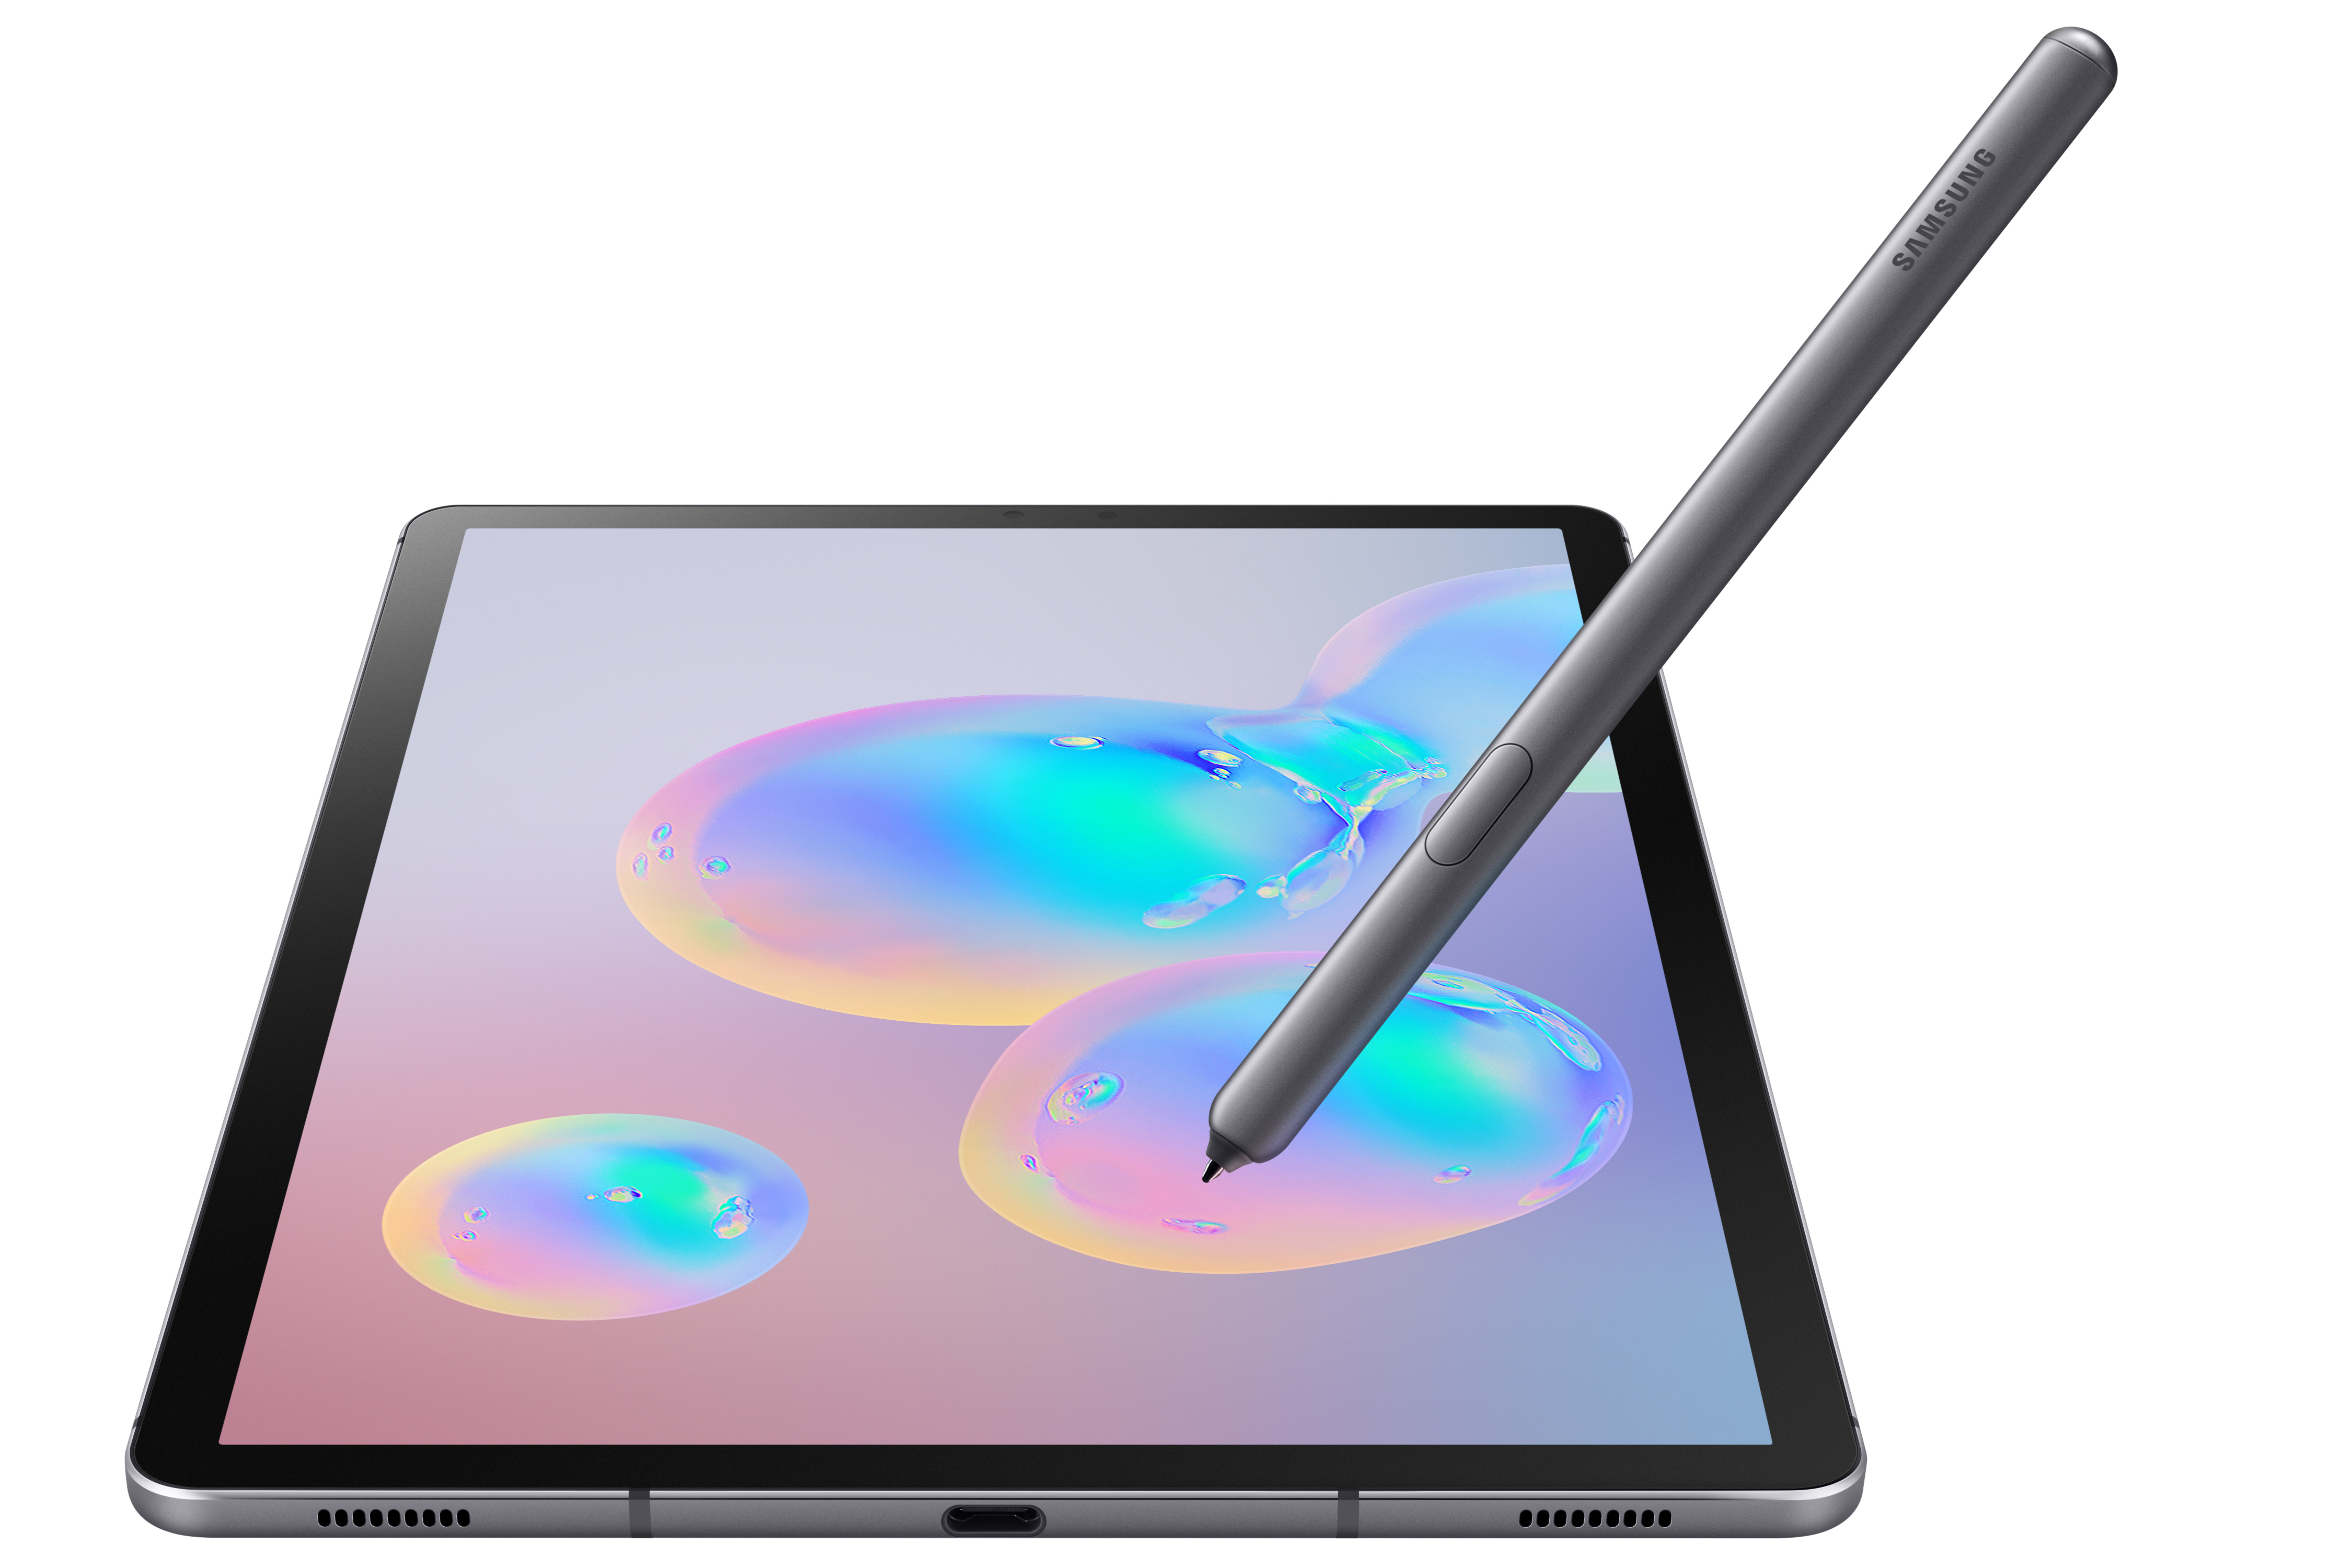 Samsung Galaxy Официальная S6 Tab: S Pen улучшена и много возможностей, чтобы бросить вызов iPad Pro 2